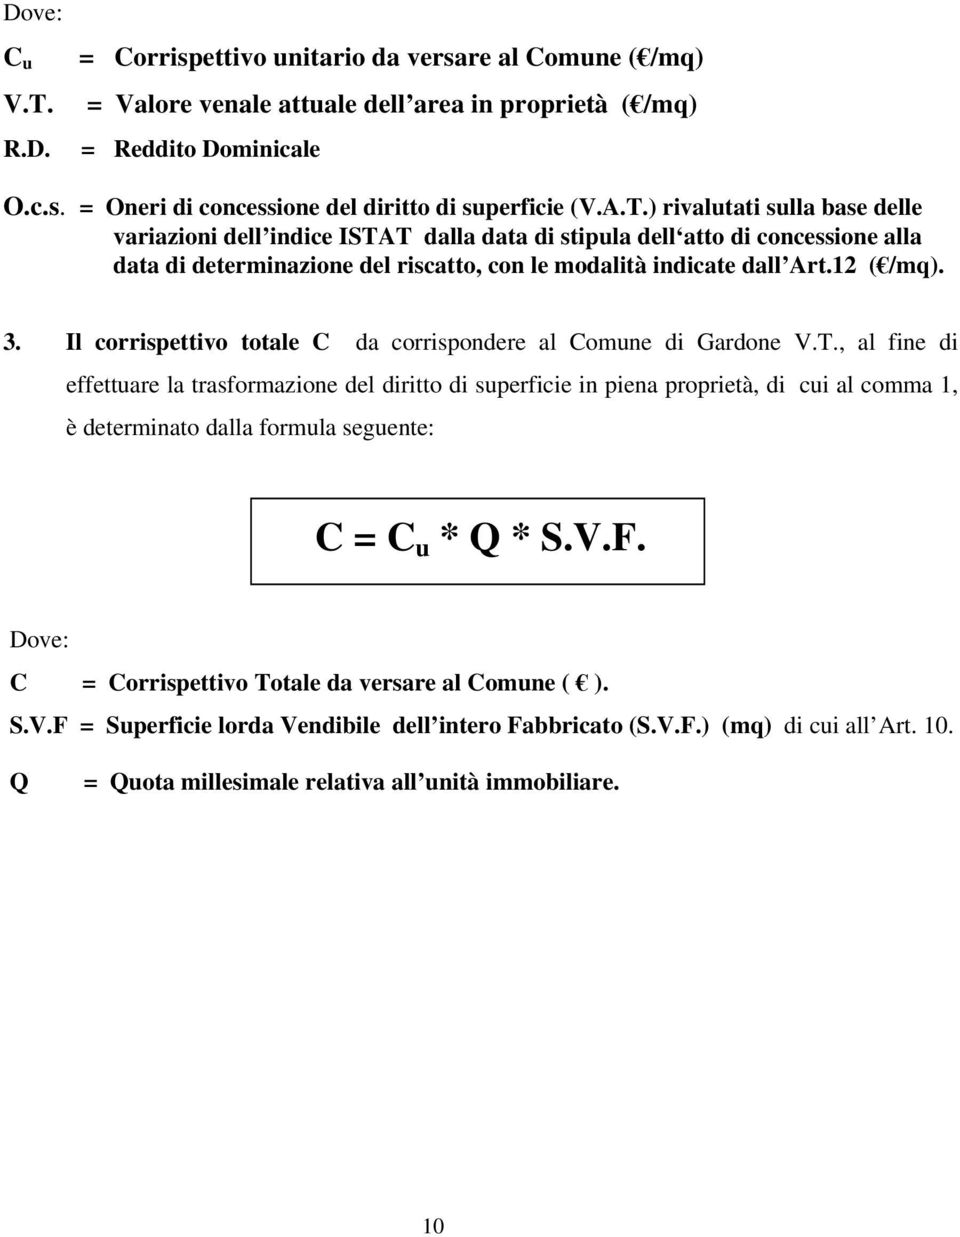 Il corrispettivo totale C da corrispondere al Comune di Gardone V.T.